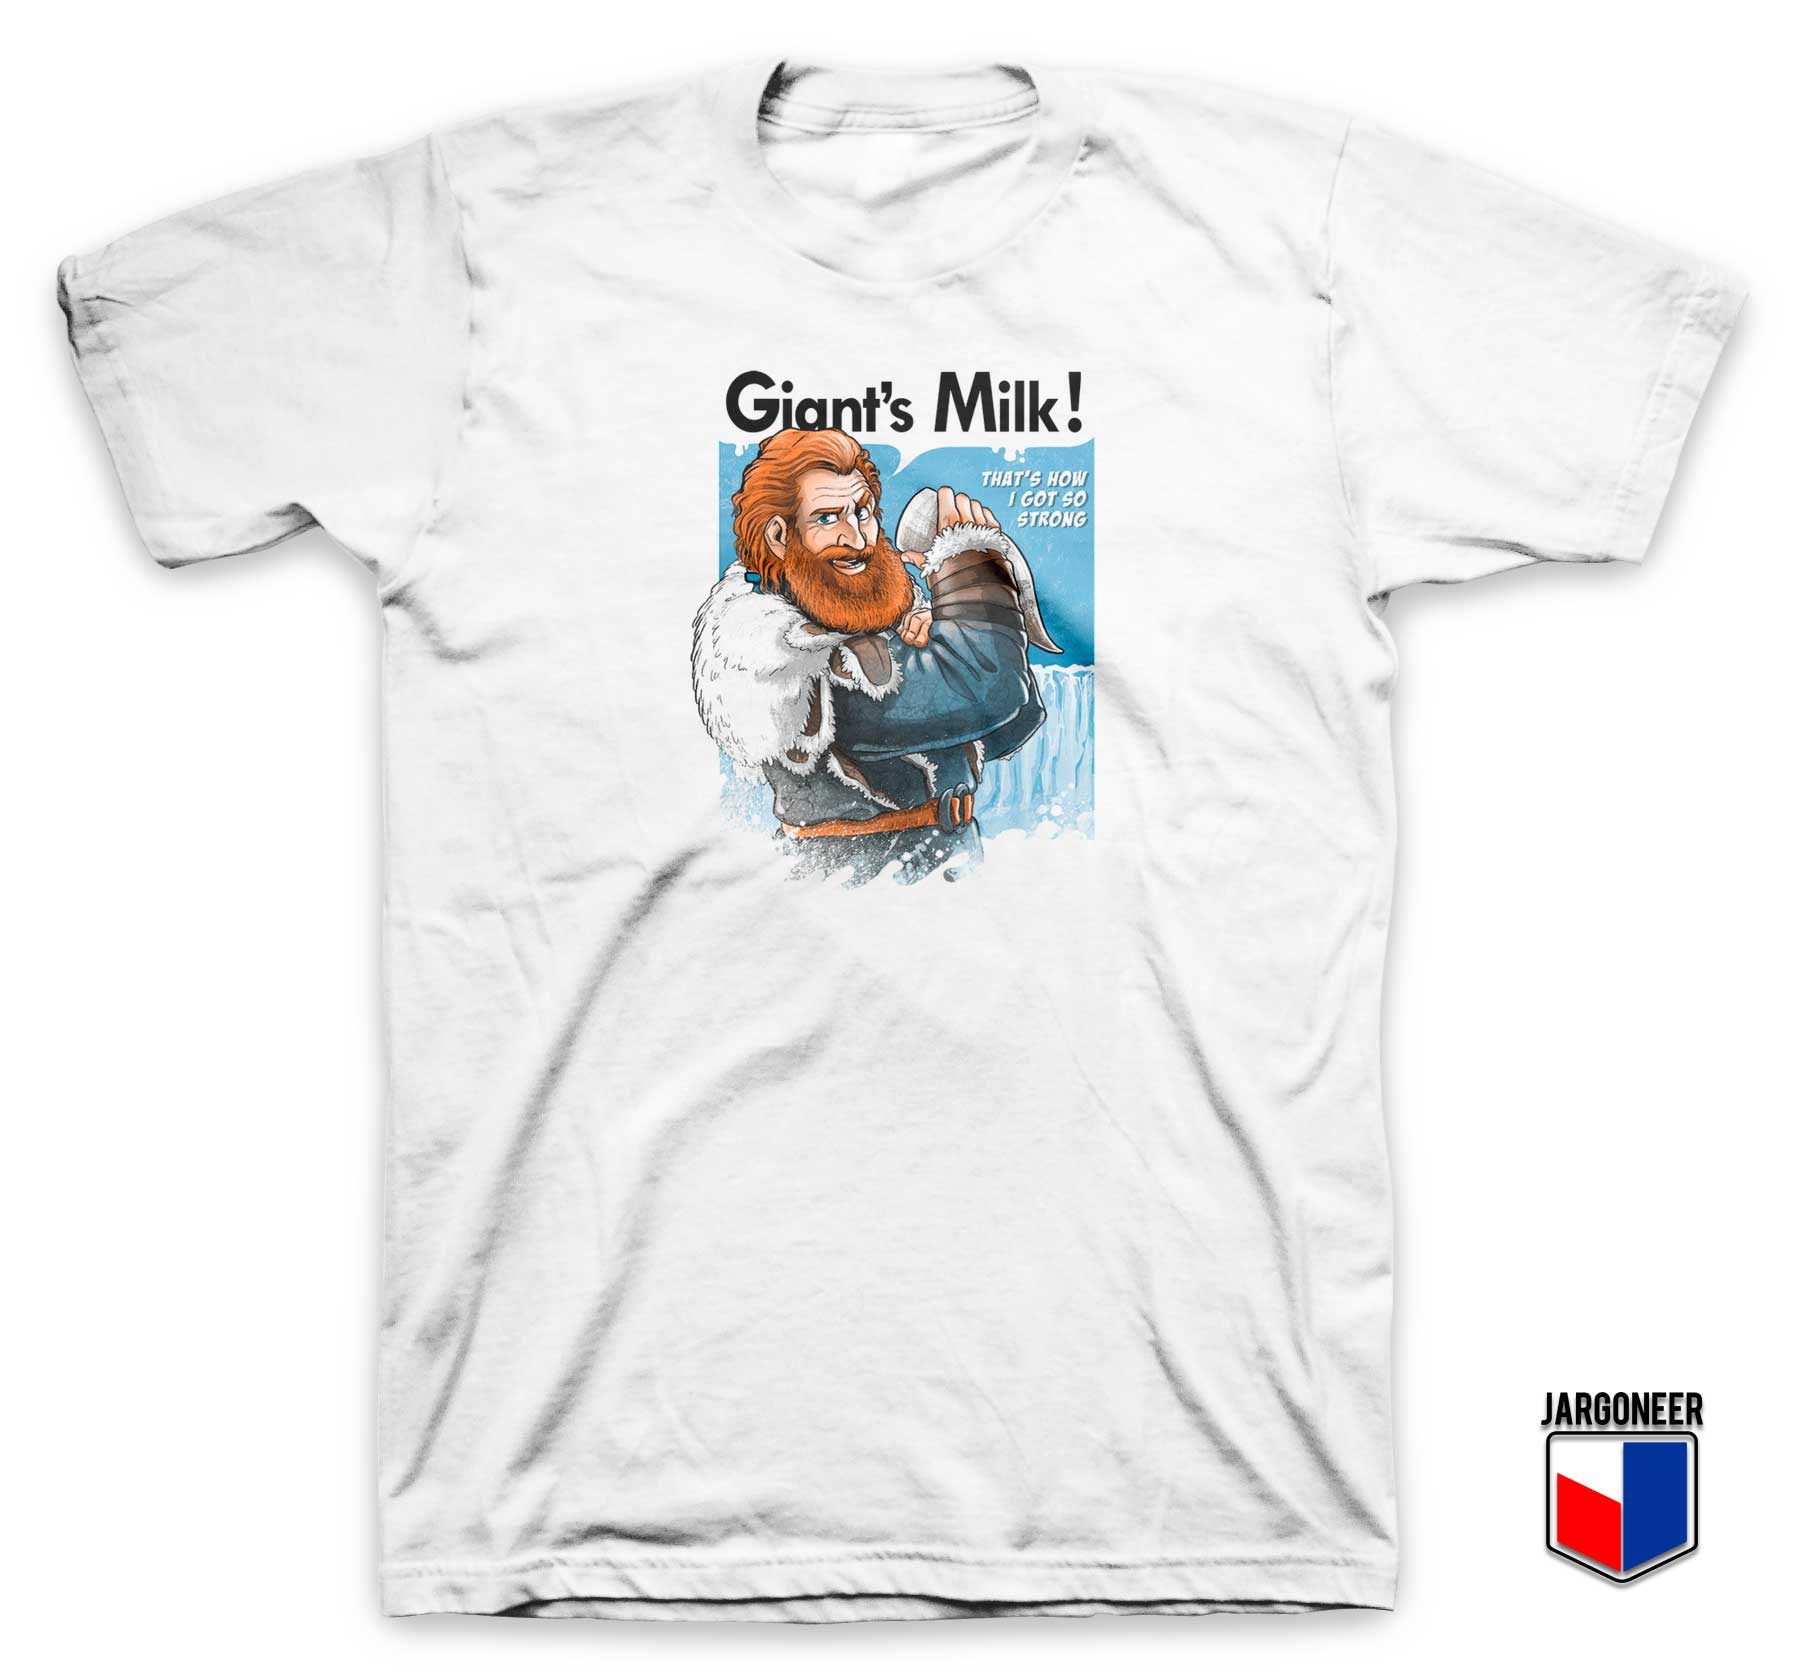 Tormund Giantsbane Giants Milk T Shirt - Shop Unique Graphic Cool Shirt Designs